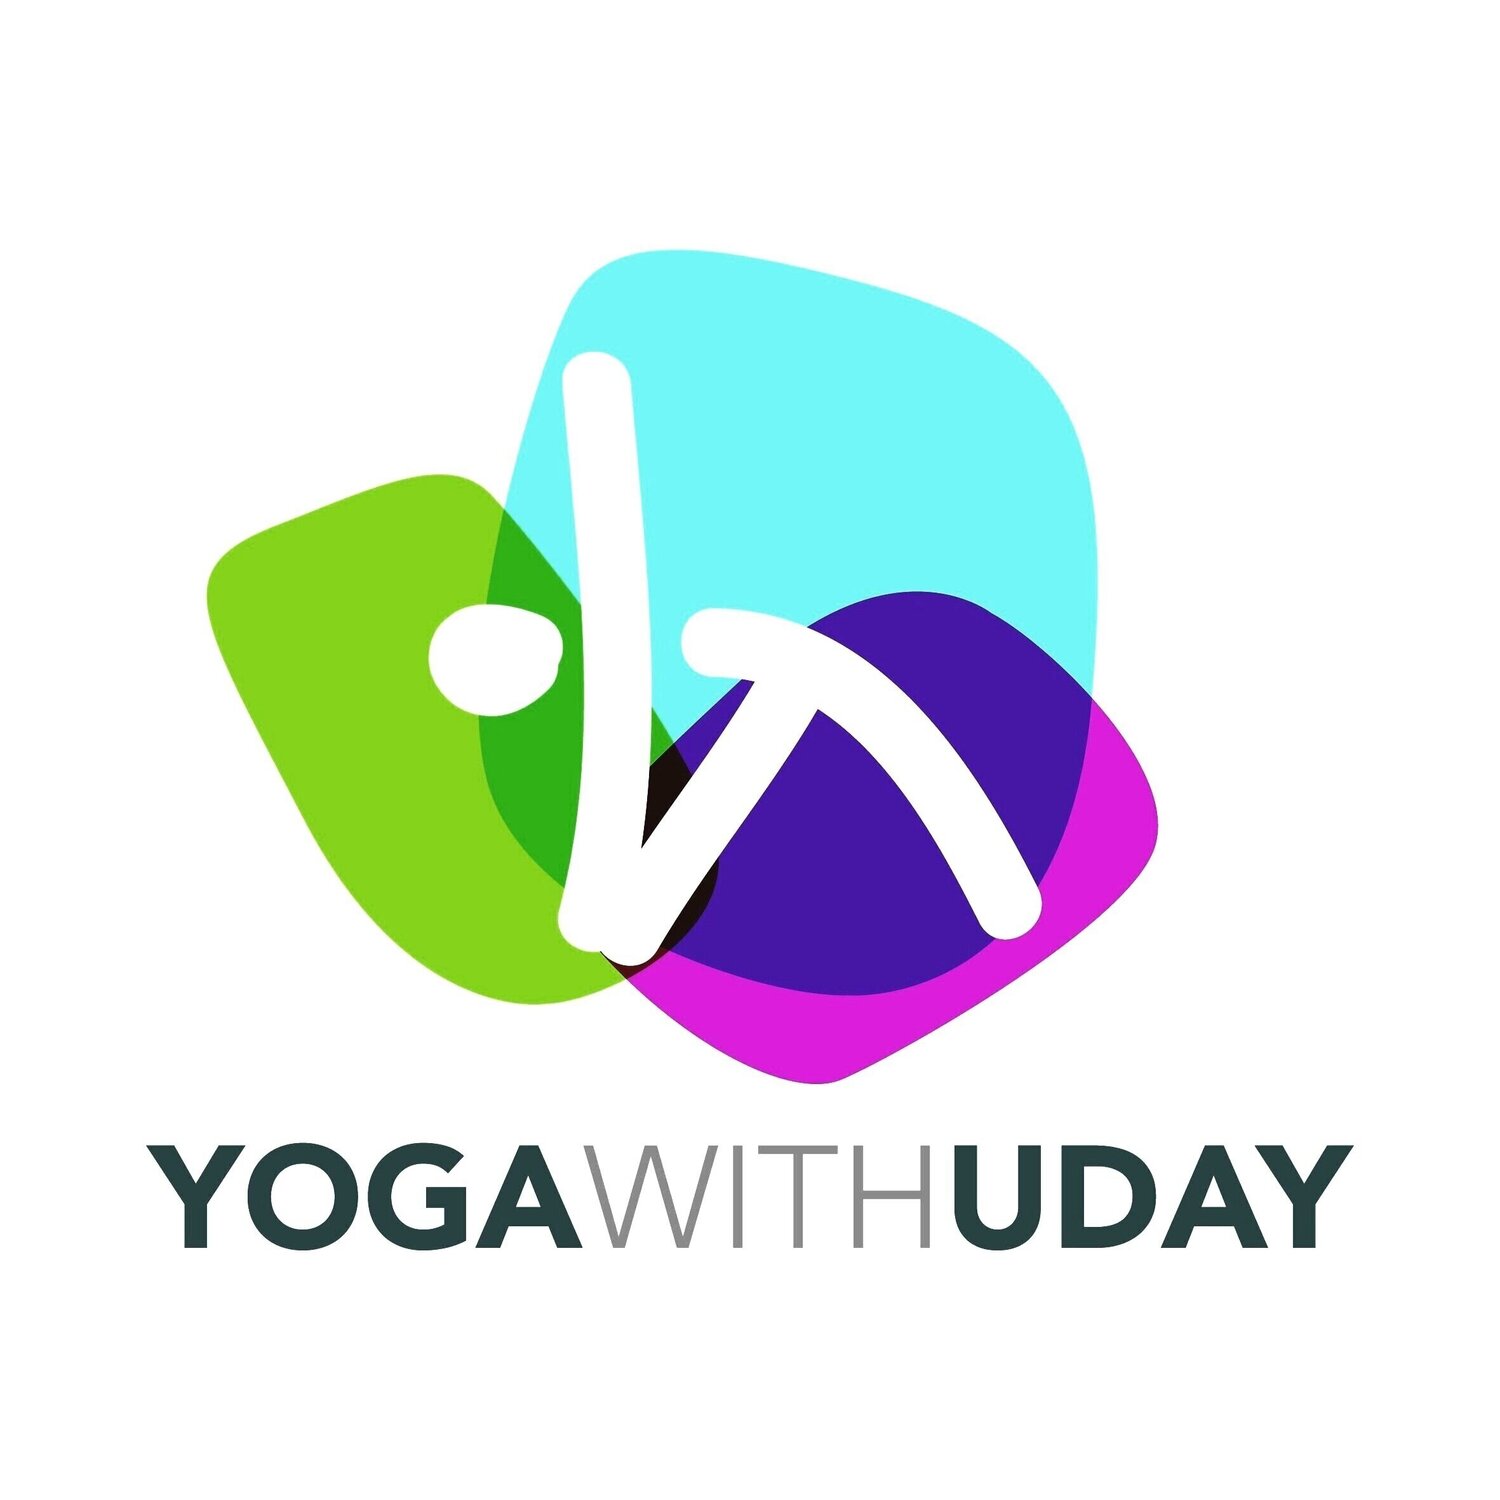 Yoga With Uday